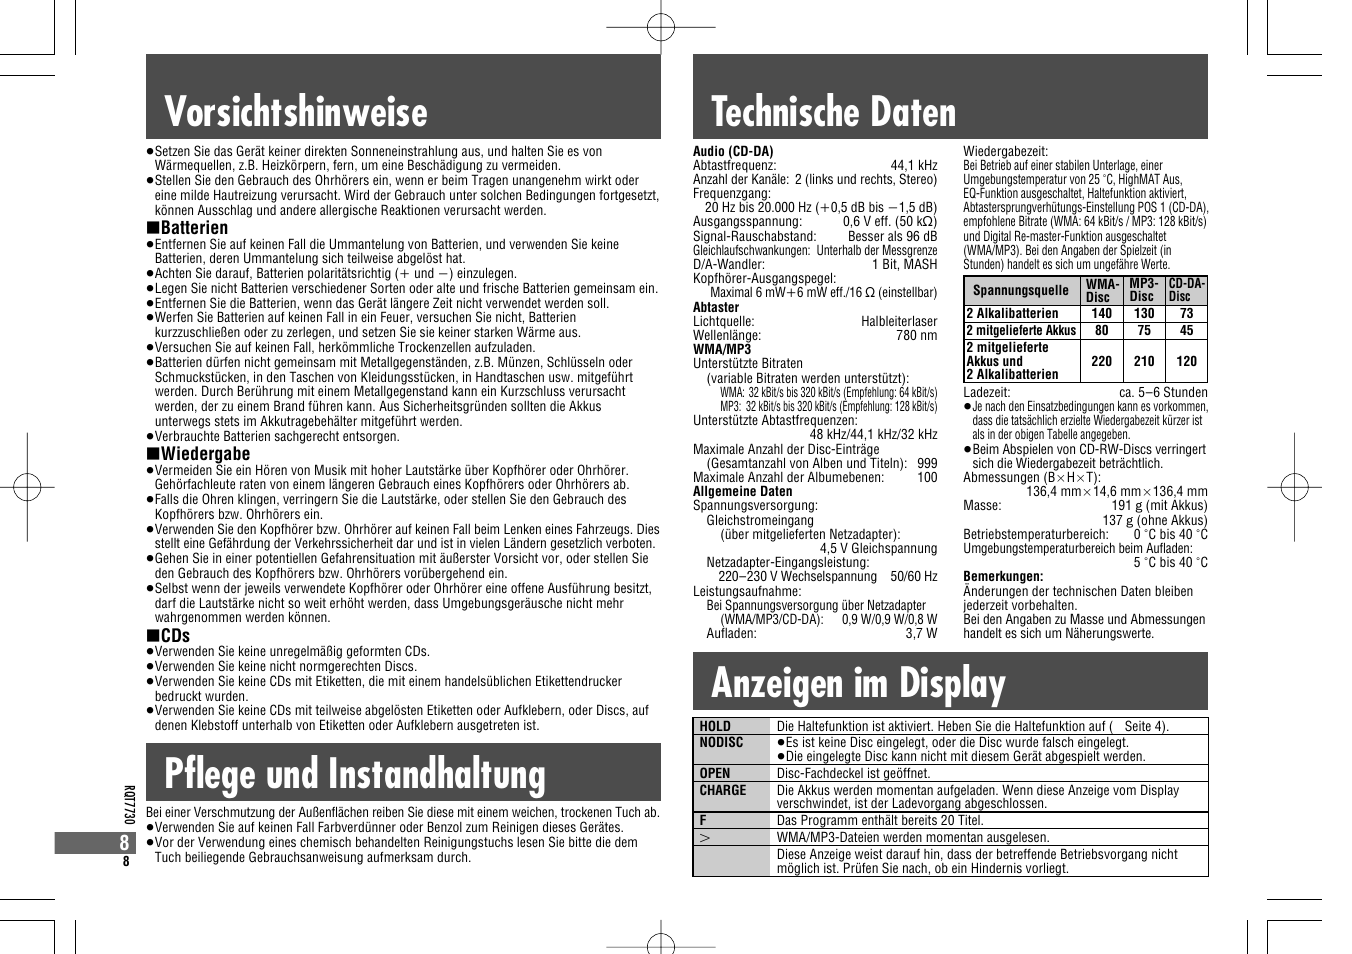 Vorsichtshinweise technische daten, Pflege und instandhaltung anzeigen im display | Panasonic SL CT 820 EG S Benutzerhandbuch | Seite 8 / 84